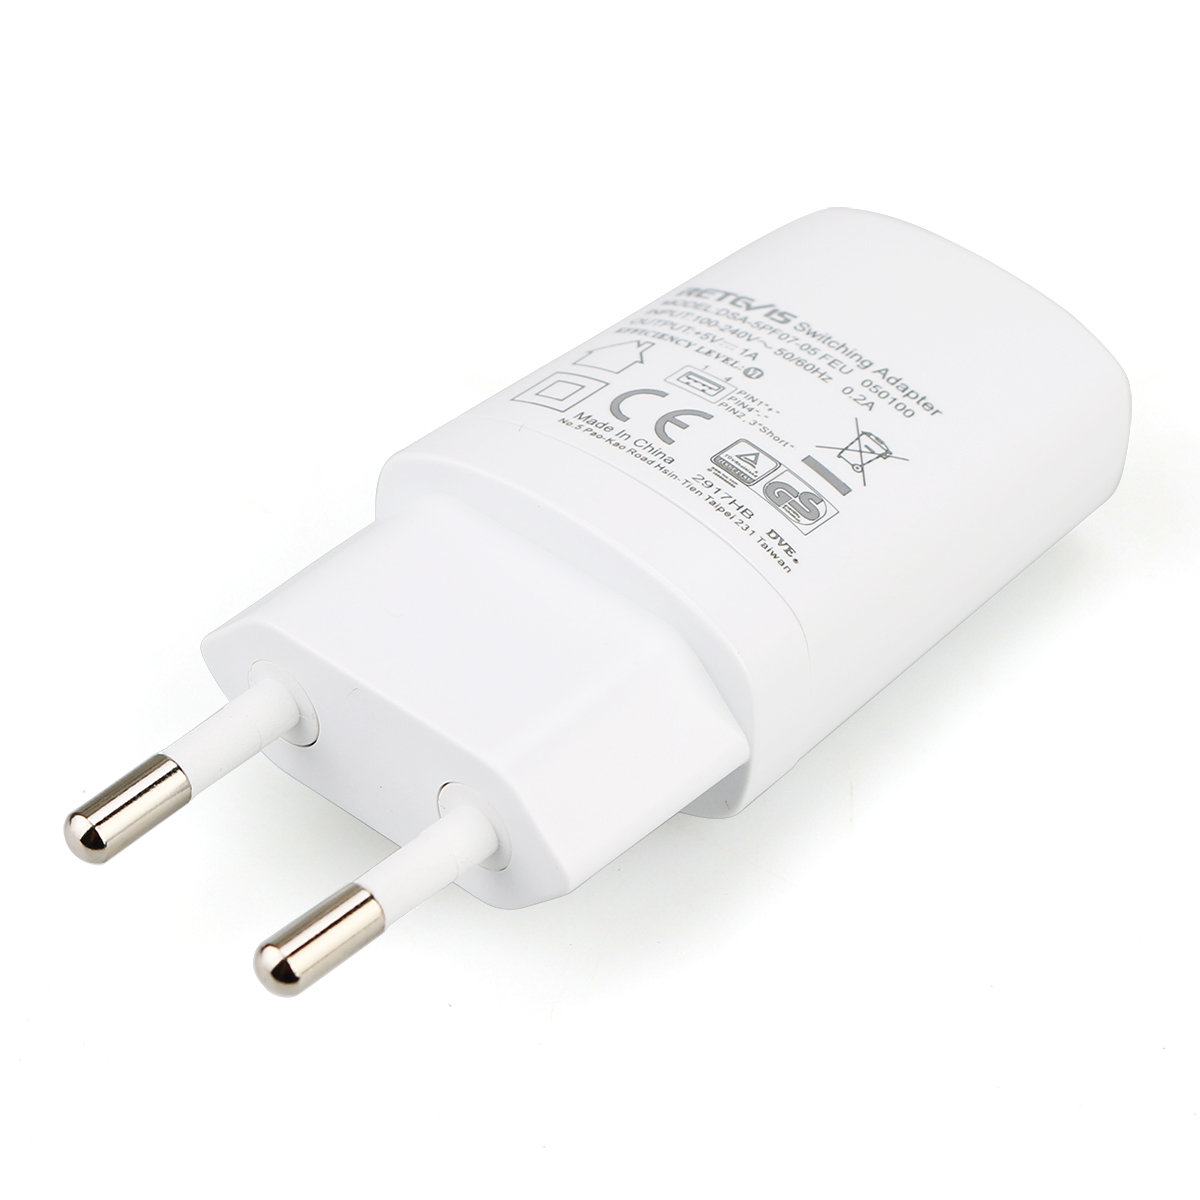 White Universal 5V 1A USB AC Power Adapter EU